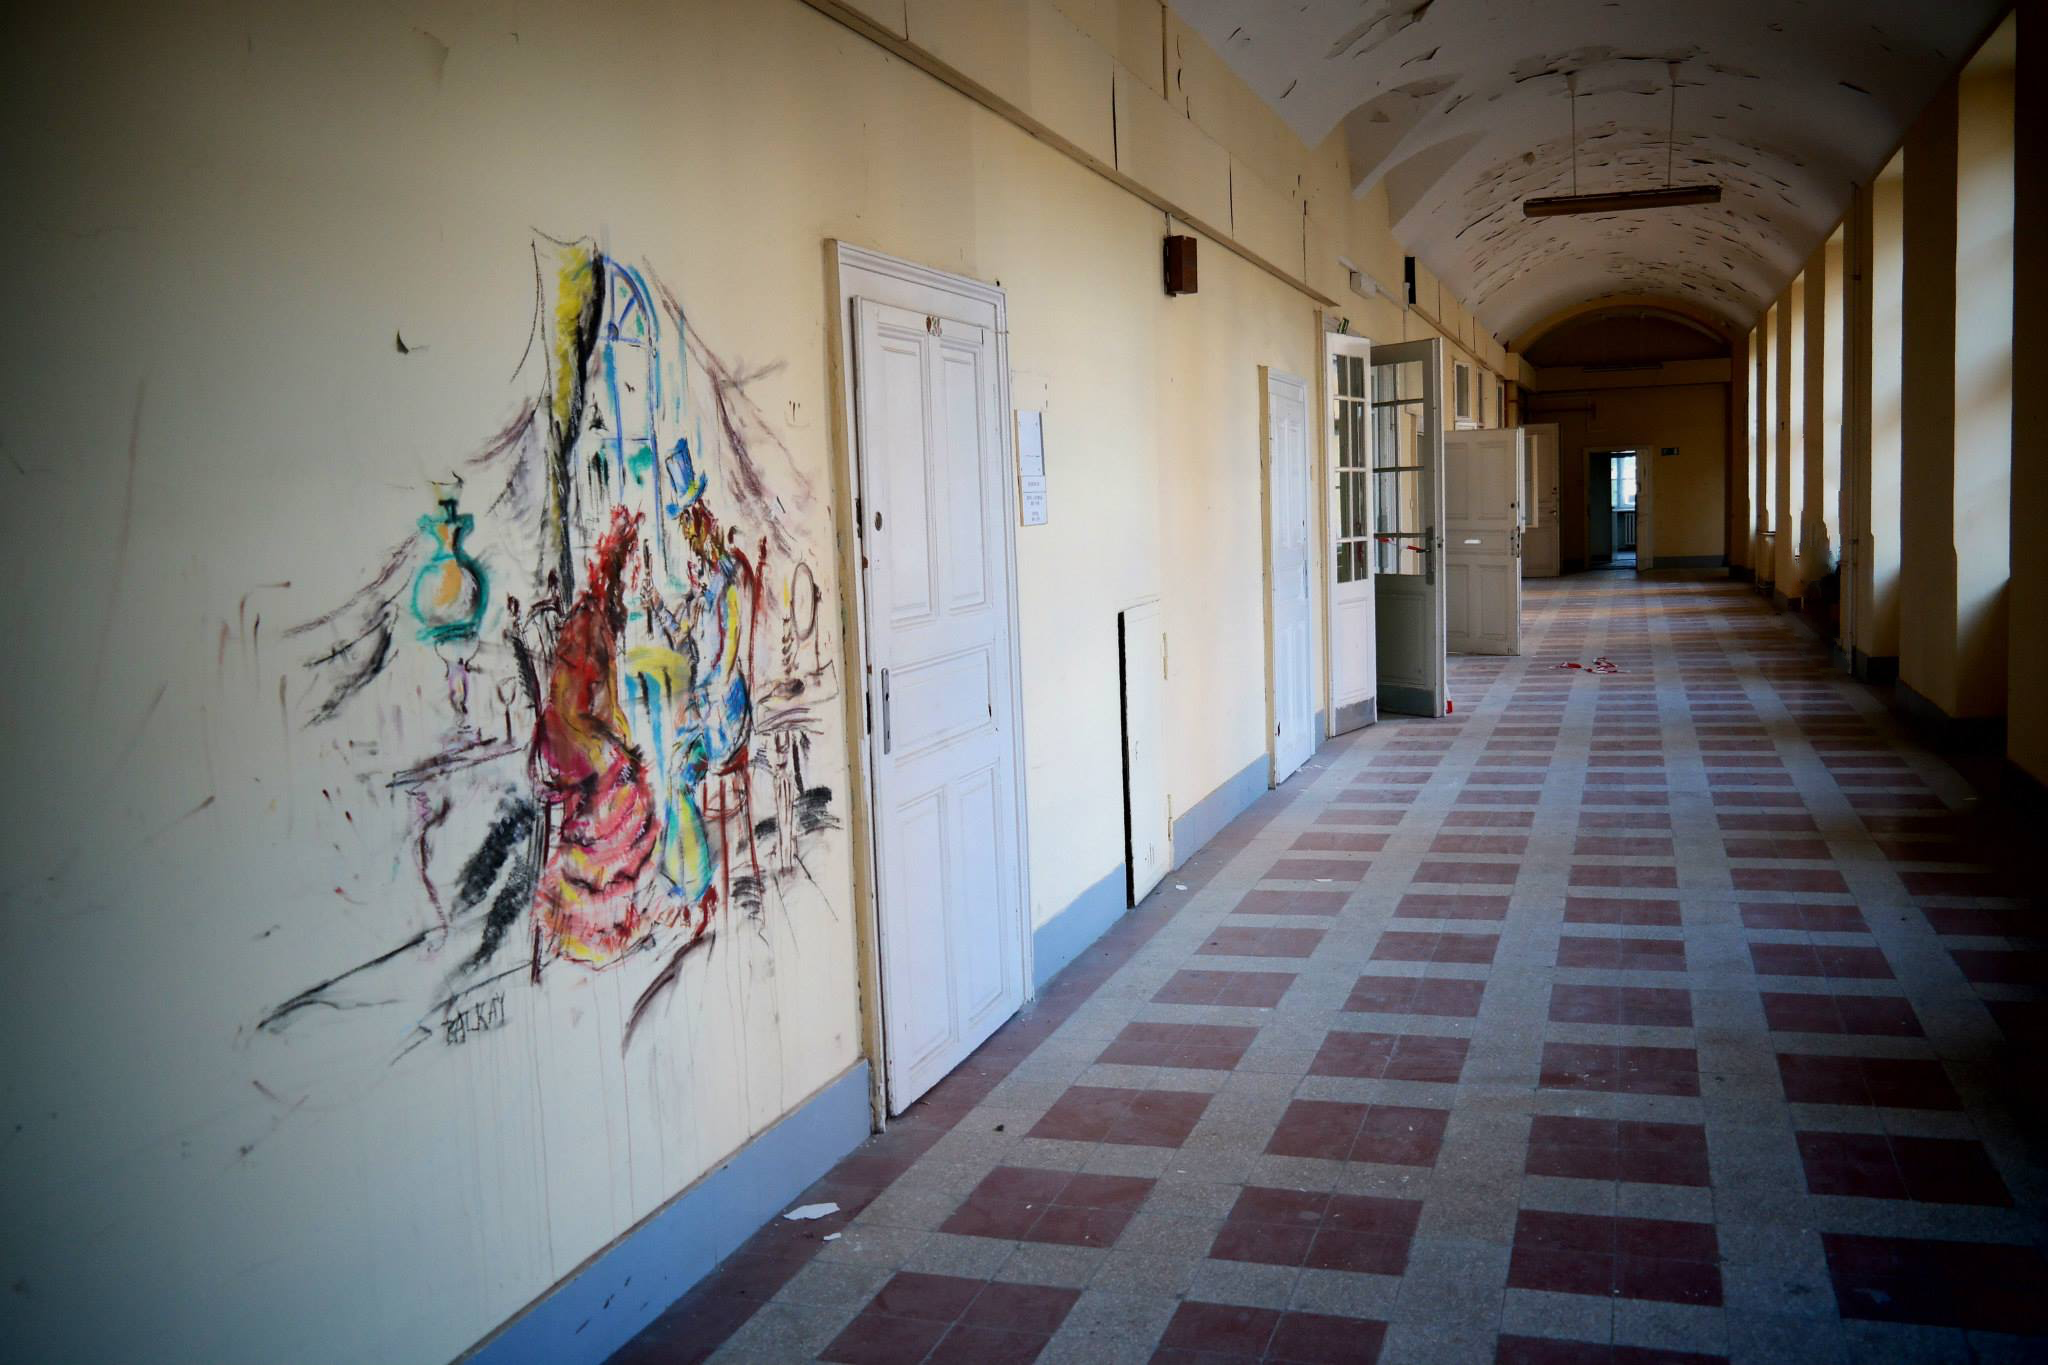 Titkos képek: A bezárt Országos Pszichiátriai és Neurológiai Intézet